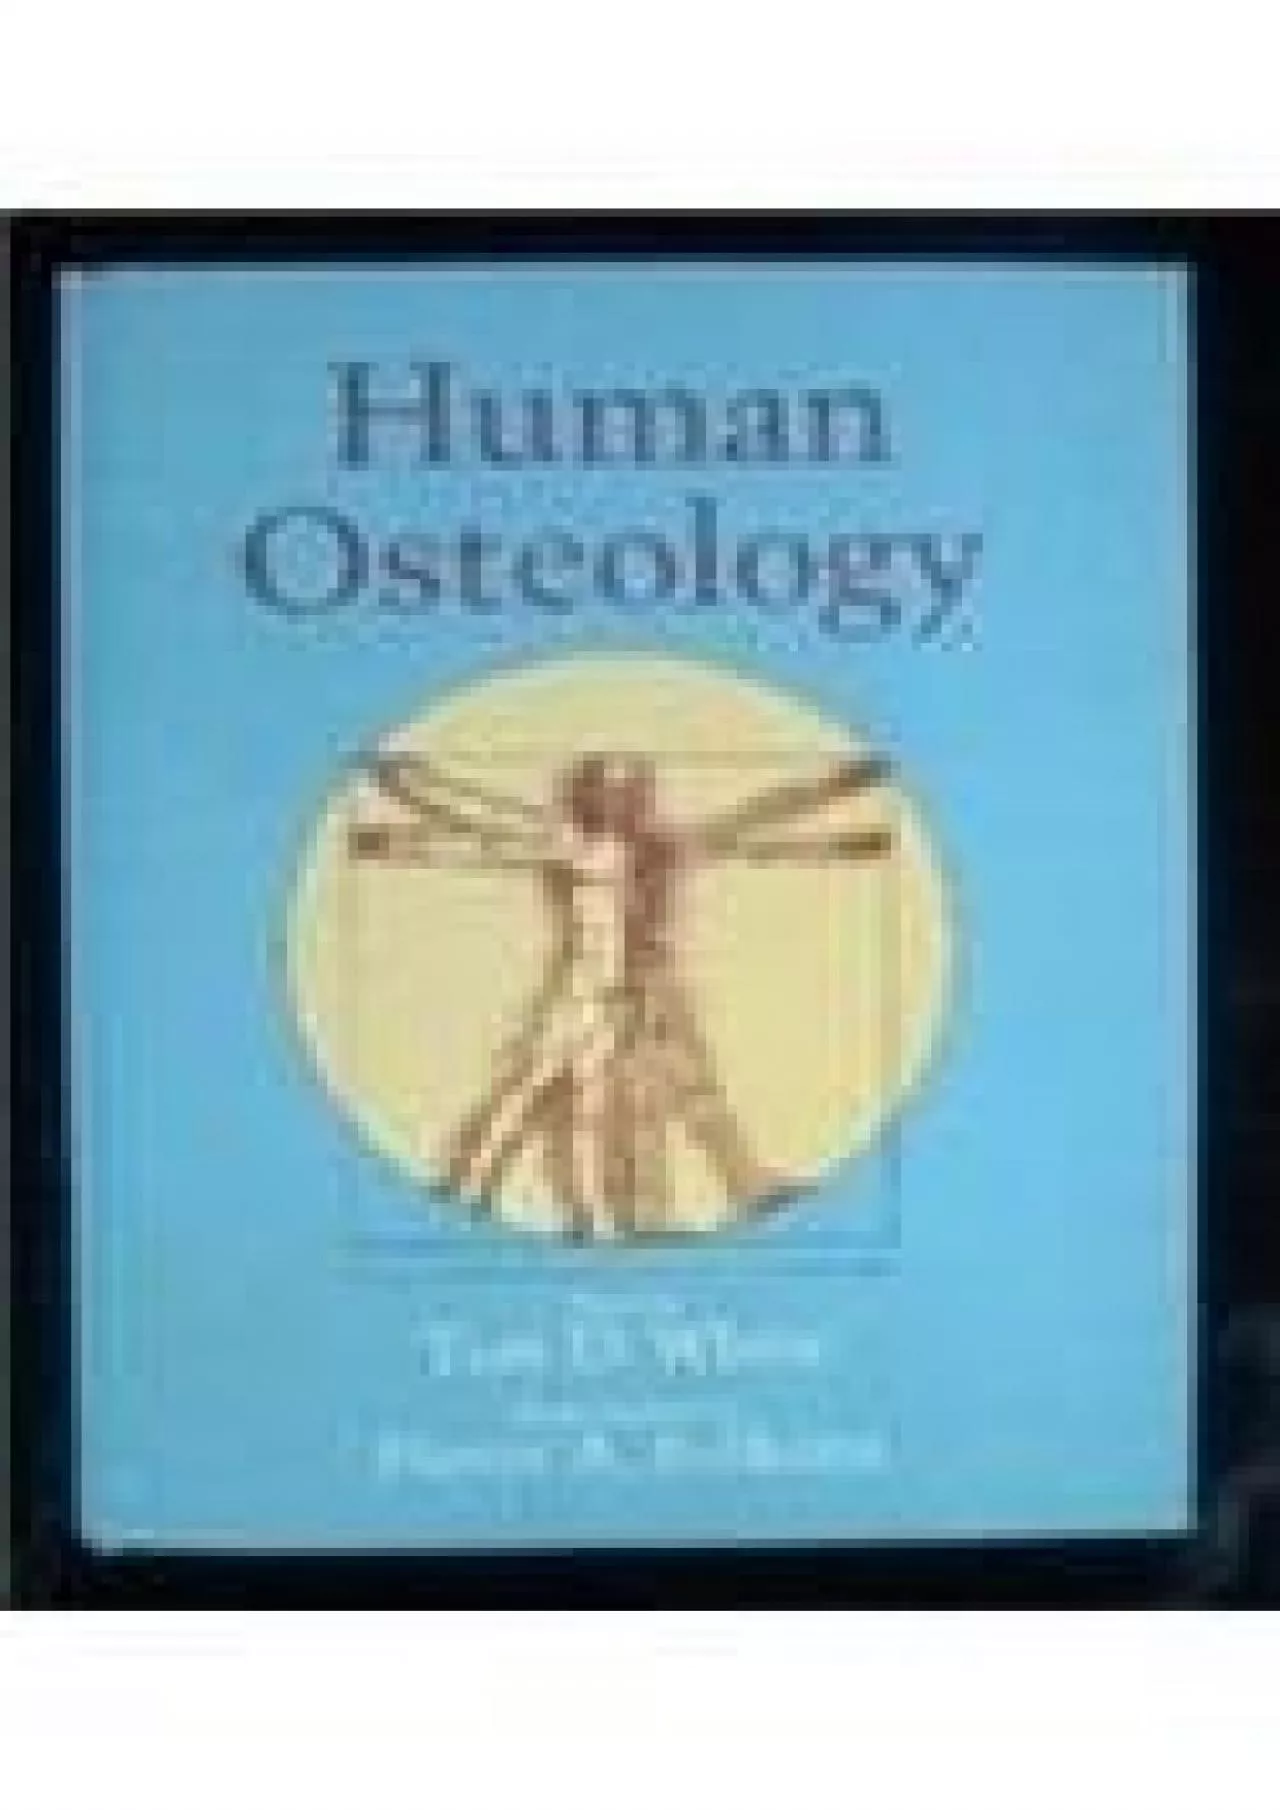 (BOOS)-Human Osteology